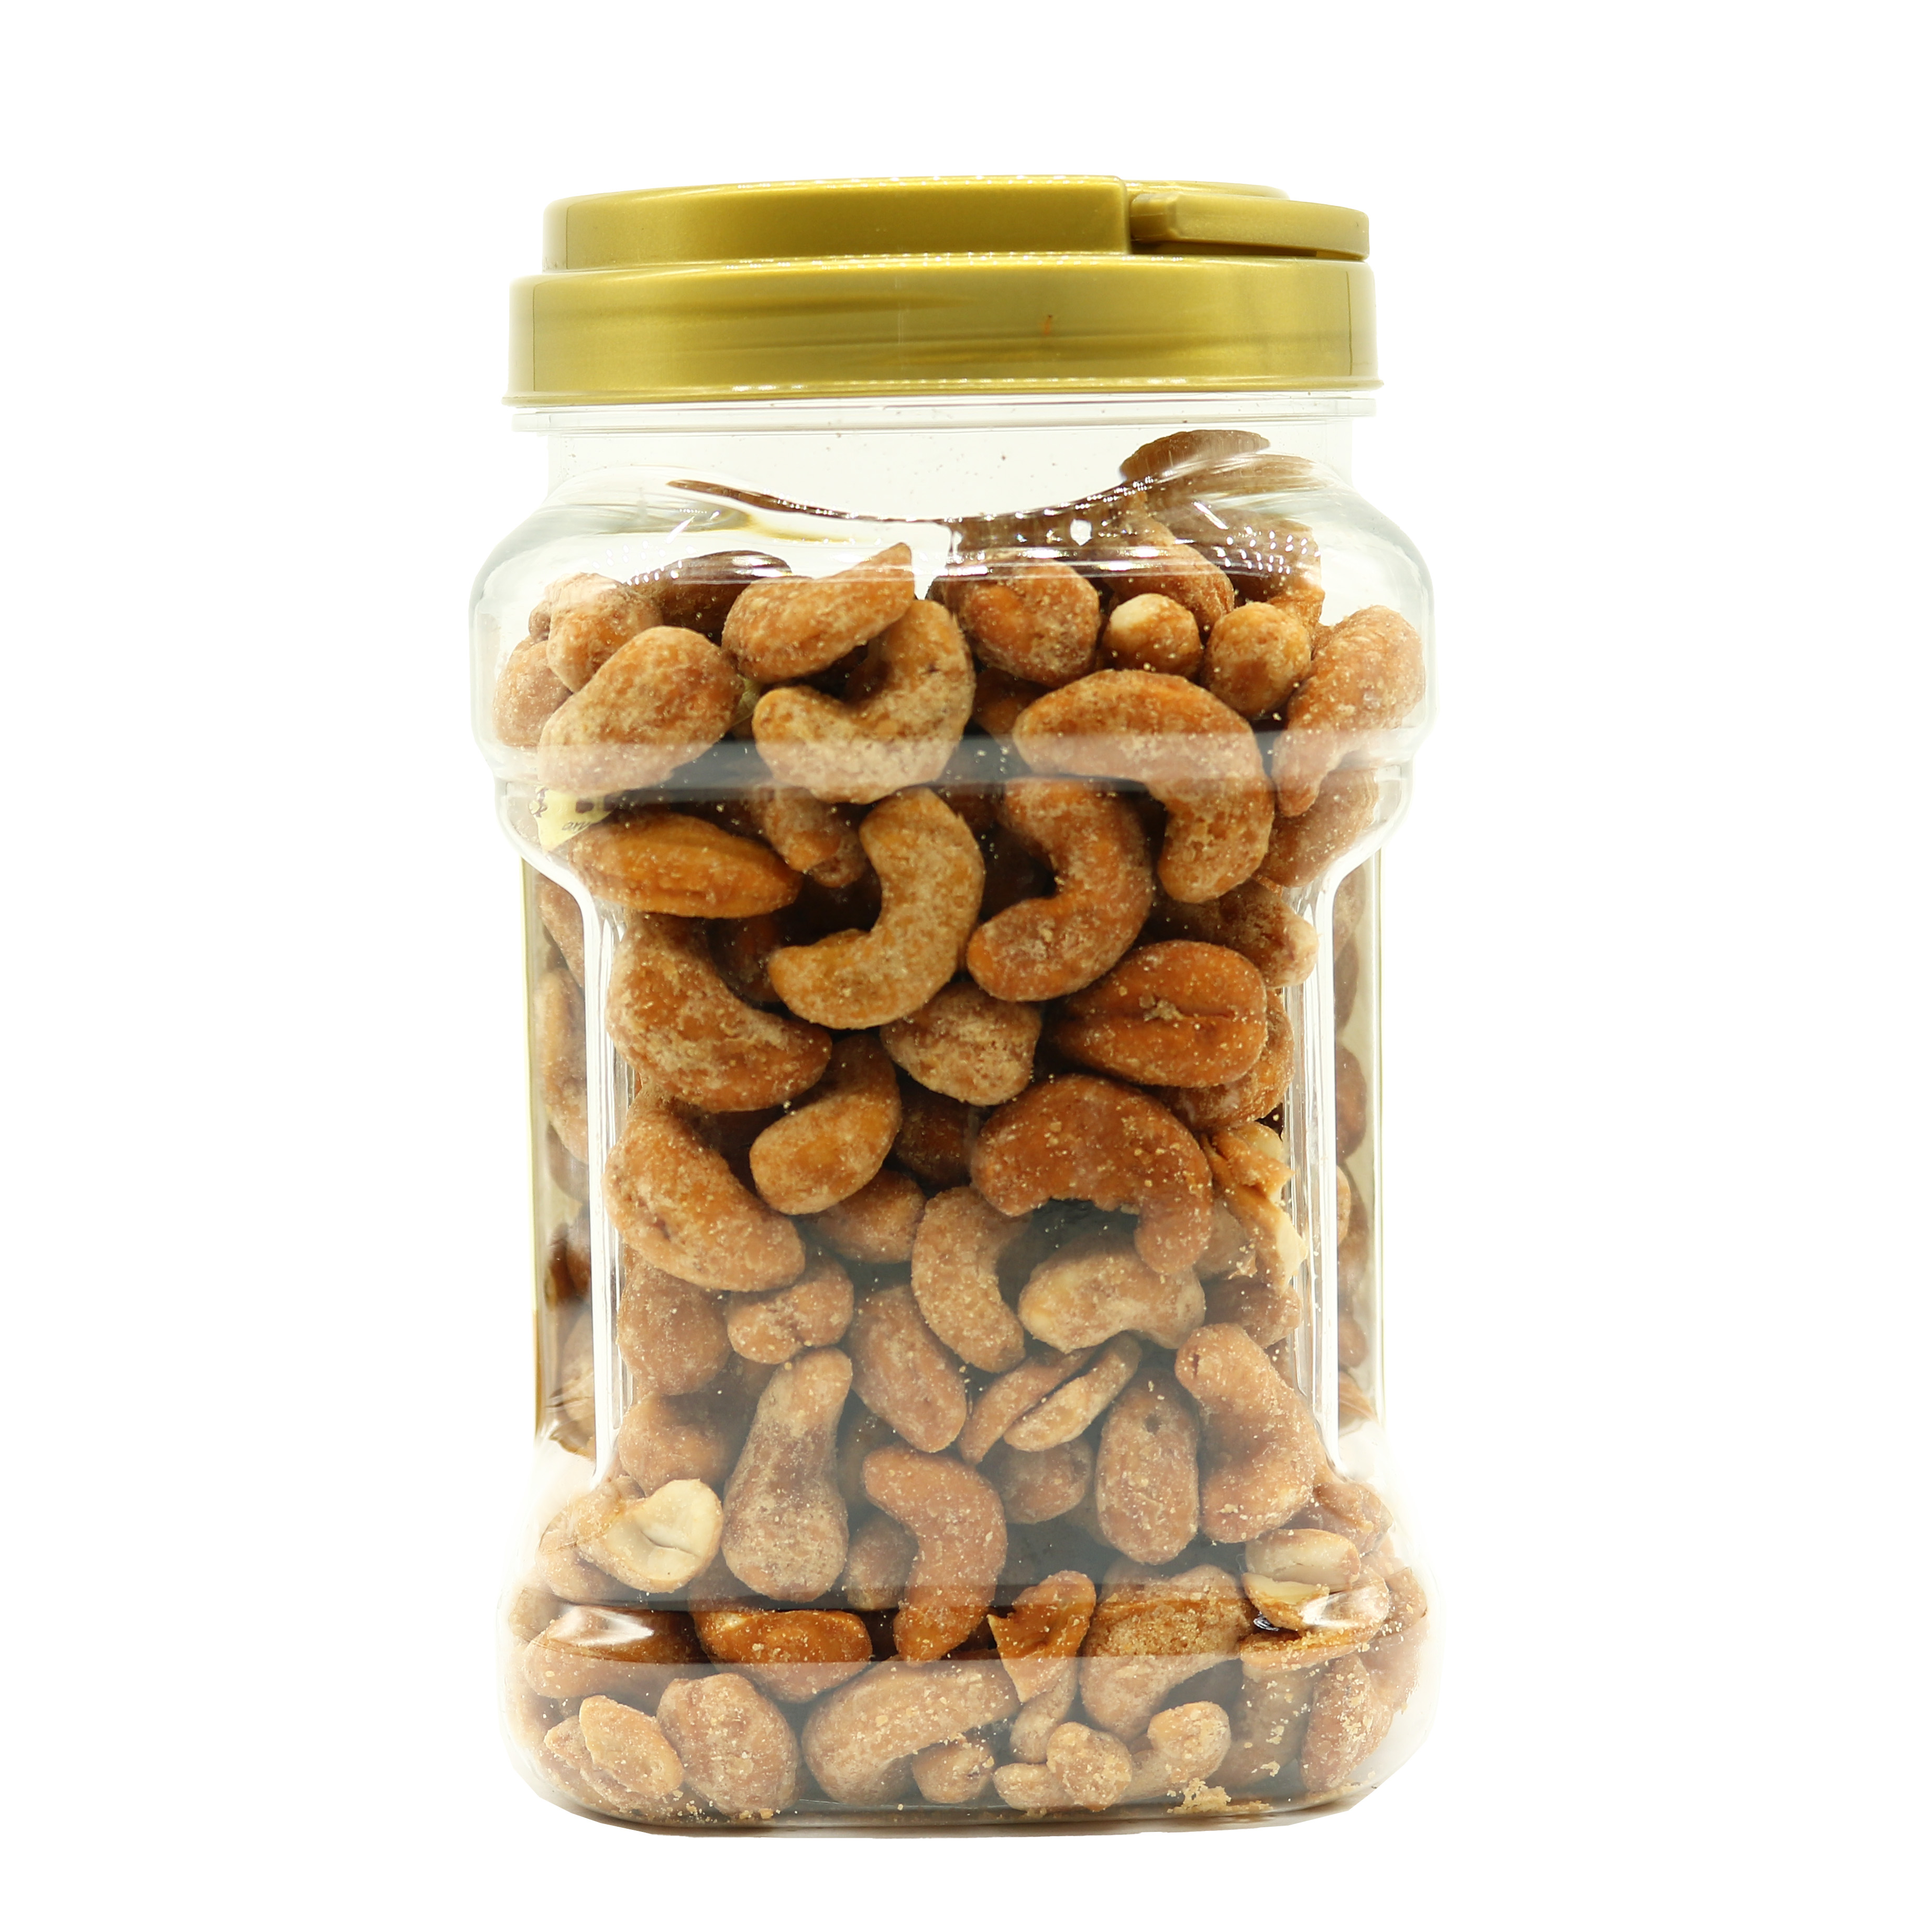 HẠT ĐIỀU MẬT ONG 400g LAFOOCO Honey roasted cashew nuts